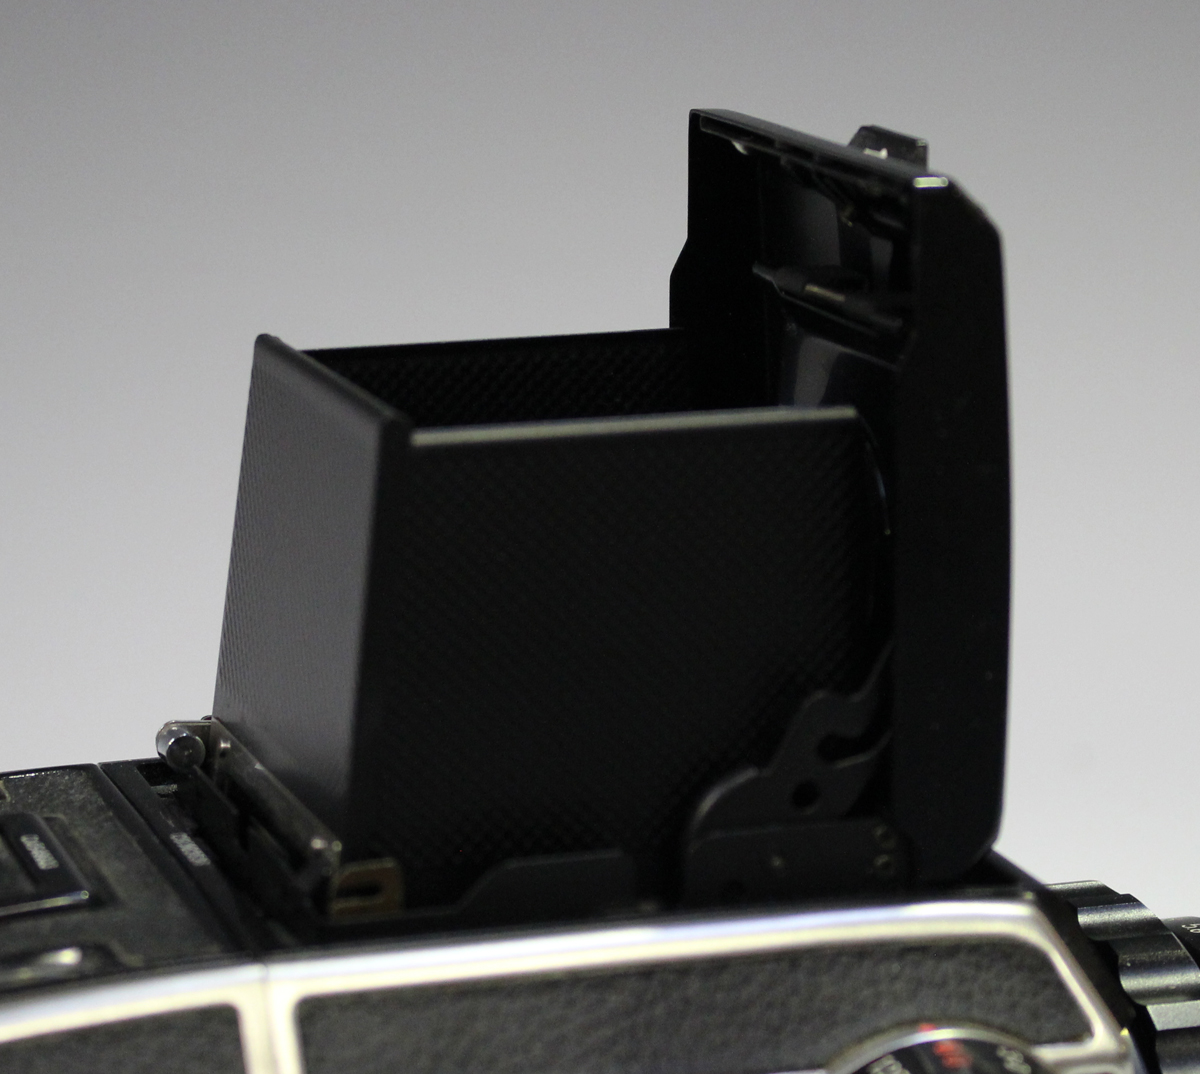 A Zenza Bronica EC-TL camera, No. CB363536, with Zenzanon MC 1:2.4 f=80mm lens, No. 801757, together - Image 6 of 12